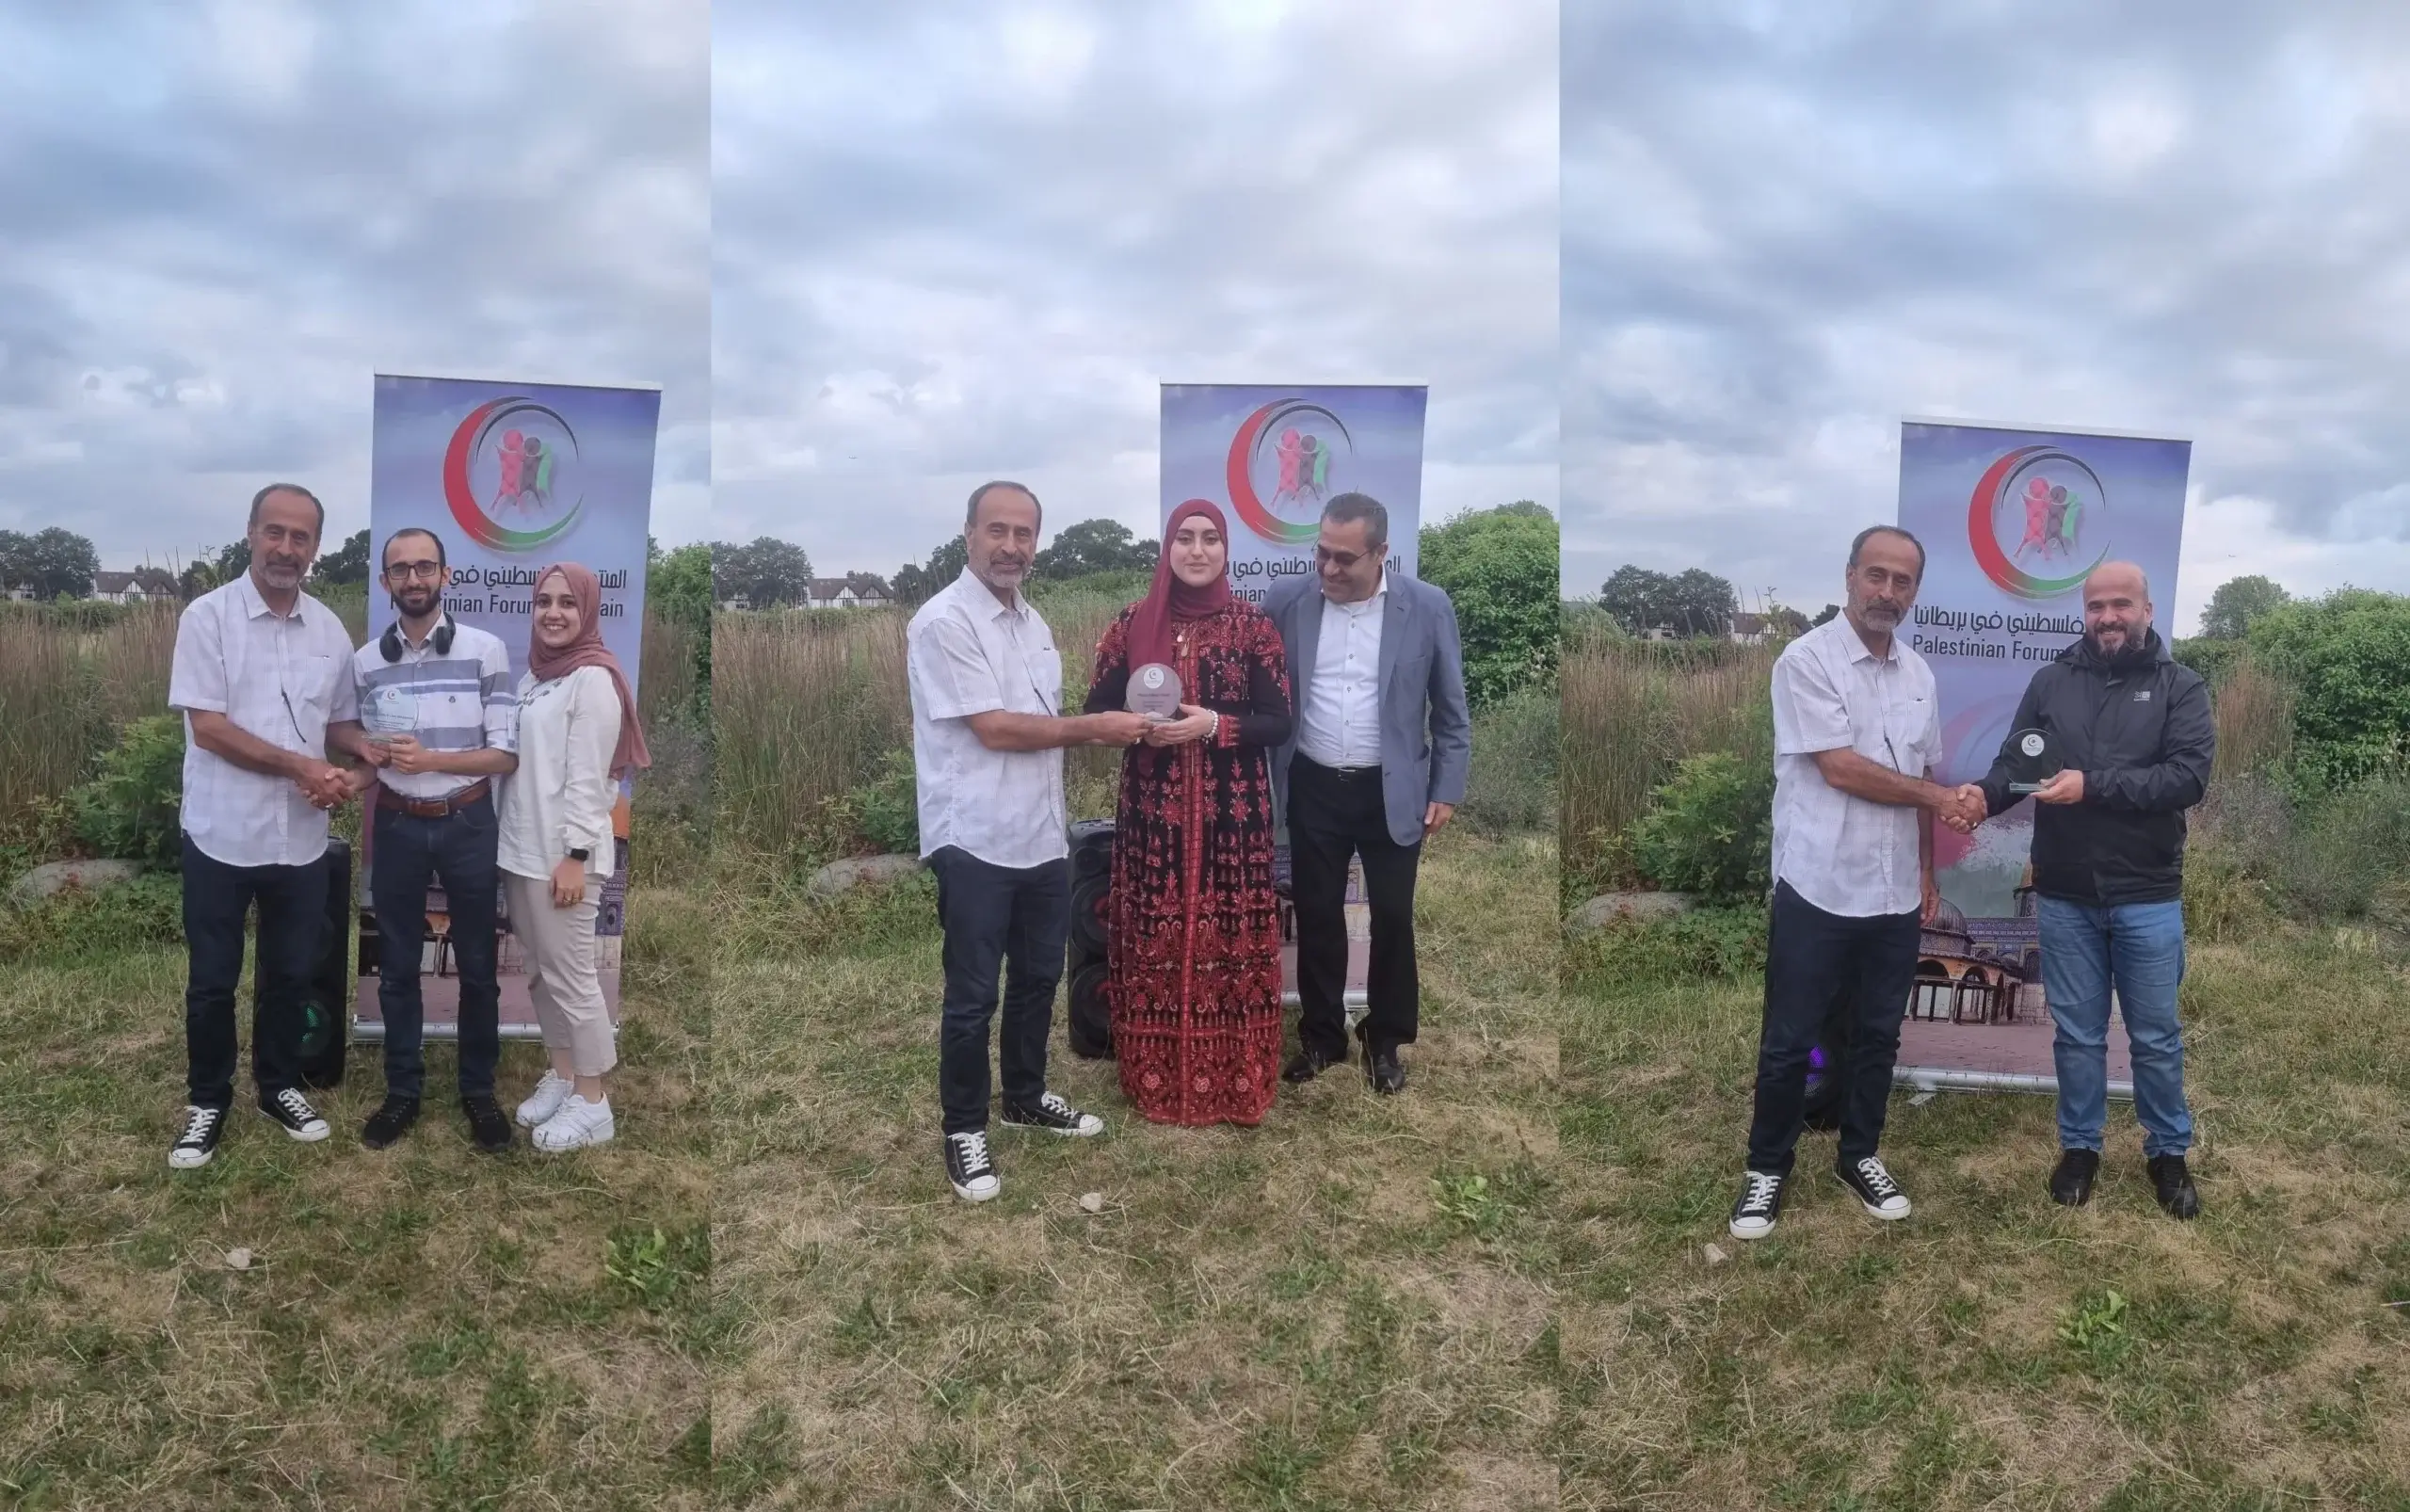 حفلات شواء عائلية عربية في لندن احتفالًا بعيد الأضحى